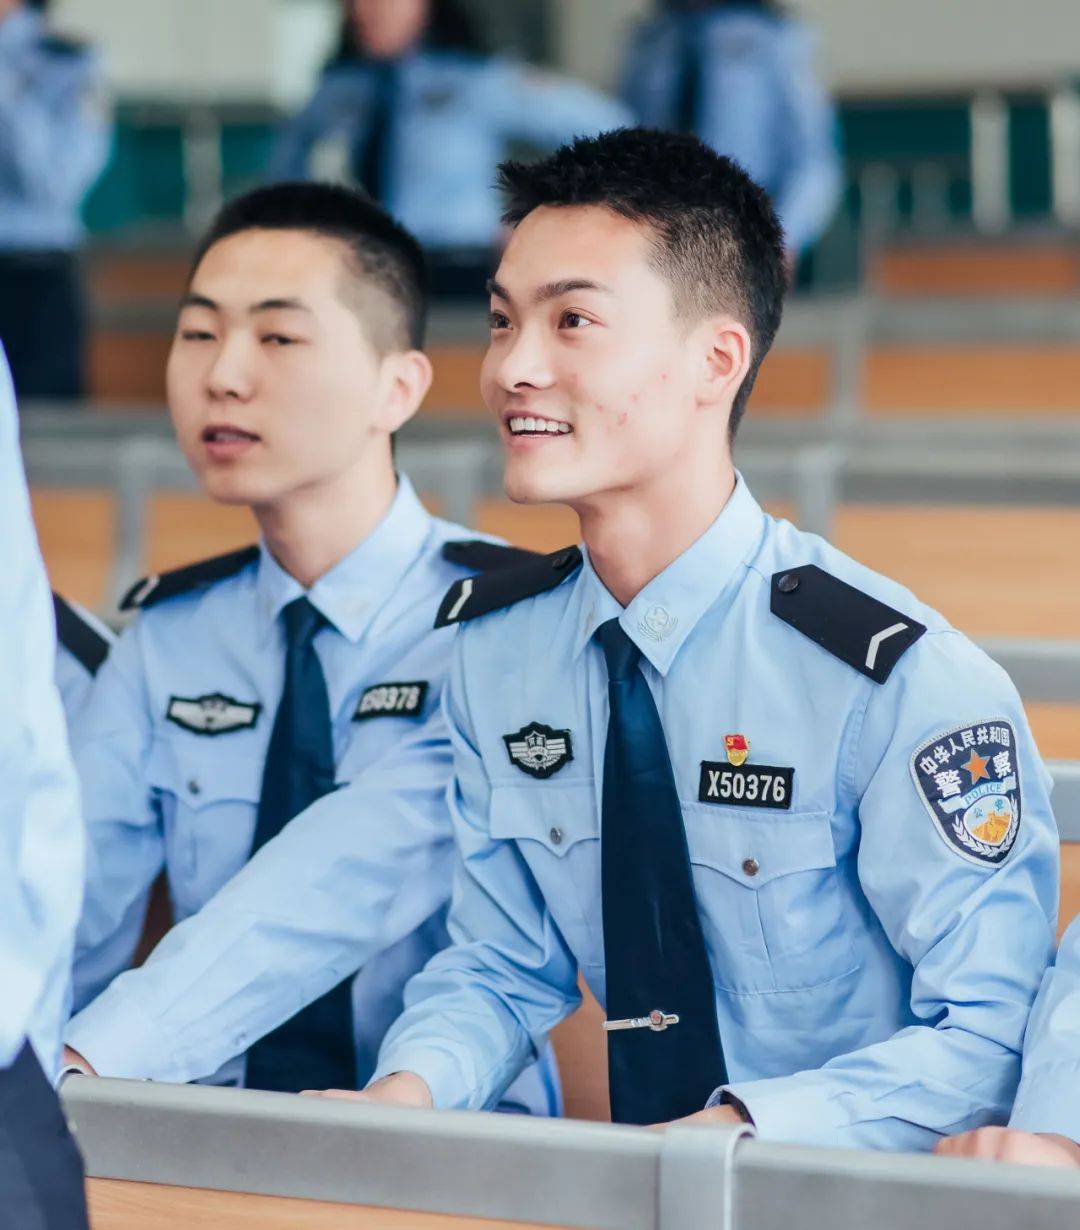 【关注】110警察节丨看看嵩县这些警察帅气的第一张警服照!